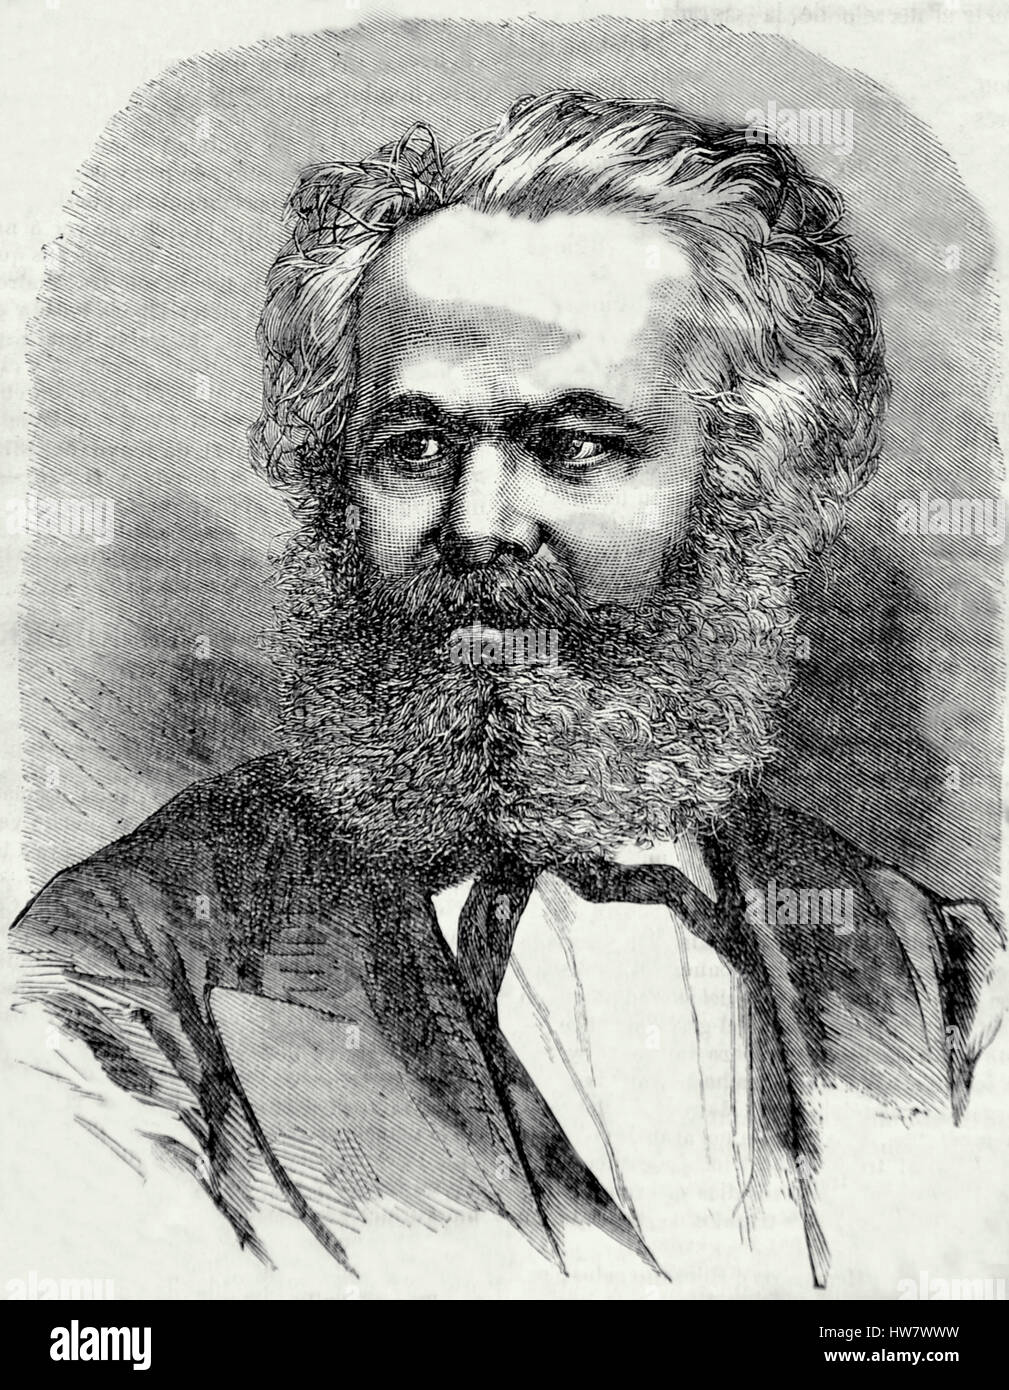 Karl Marx (1818-1883) 19th. Secolo. Economista, Filosofo e socialista rivoluzionario.Il Manifesto comunista. Incisione. Foto Stock